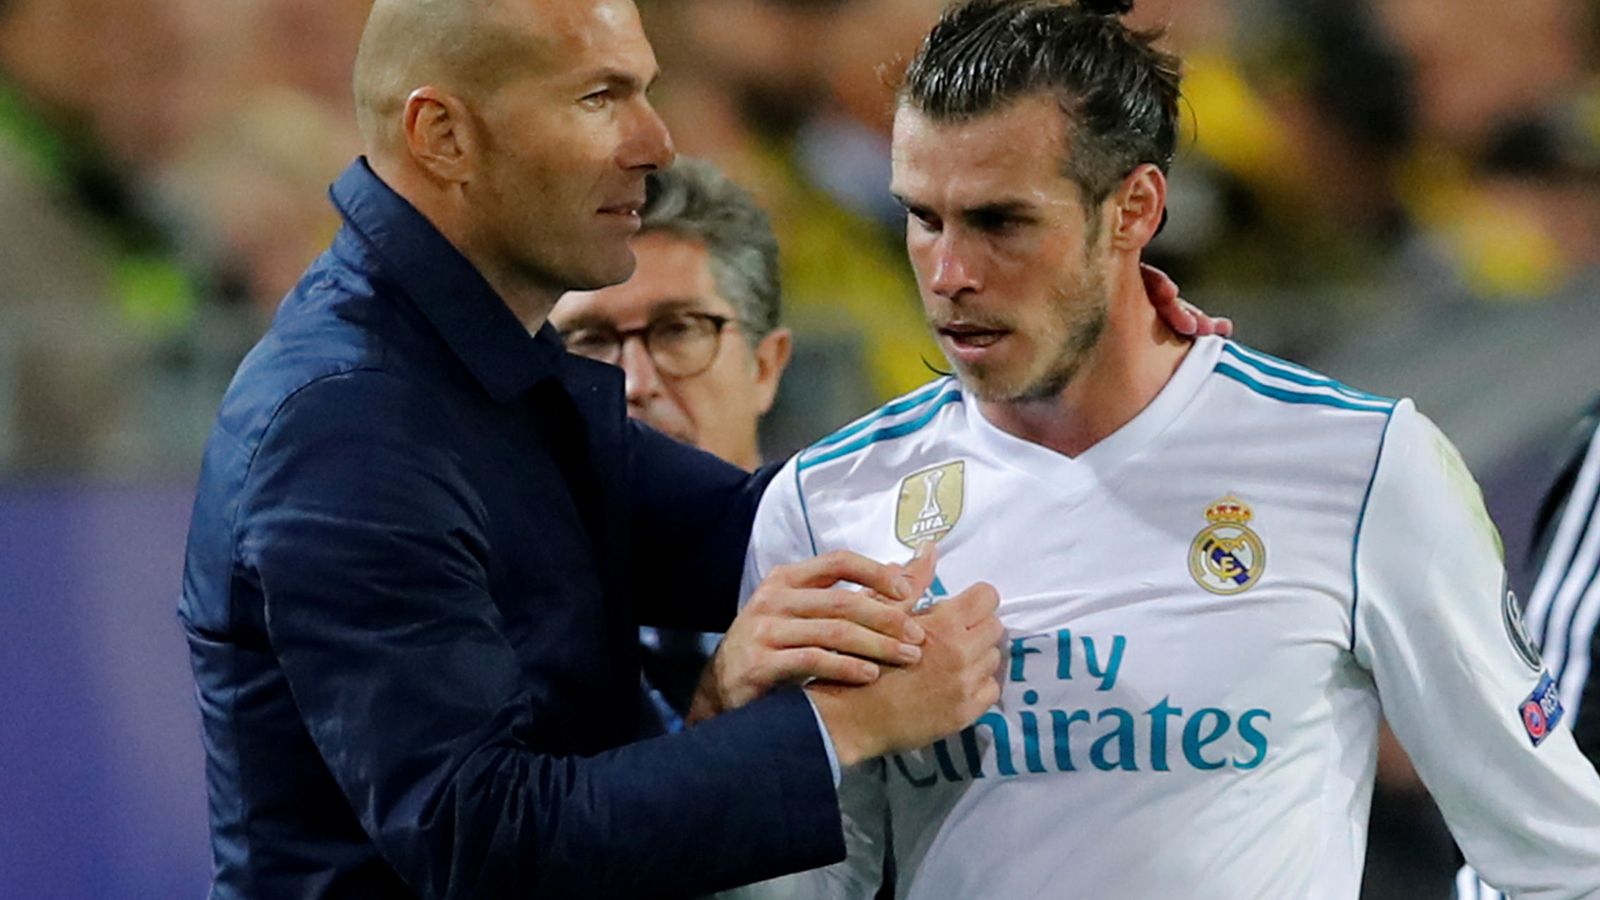 Foto: Zidane saluda a Bale tras sustituirle en el partido de Champions contra el Dortmund. (Reuters)